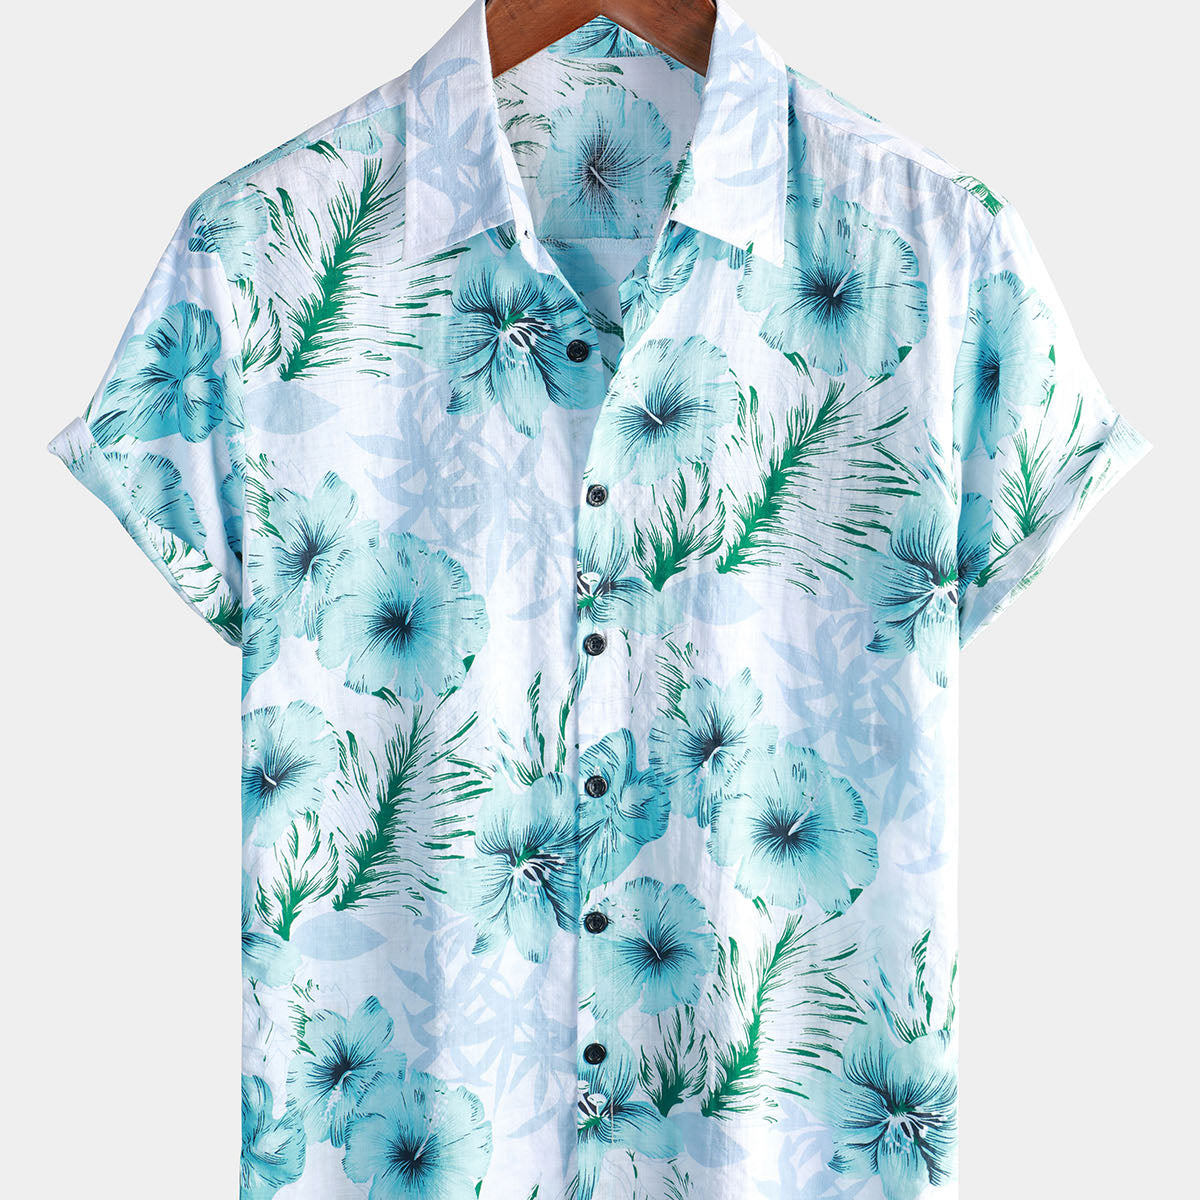 Men's Floral Tropical Button Up Blue Hibiscus Summer Holiday Beach Hawaiian Short Sleeve Shirt